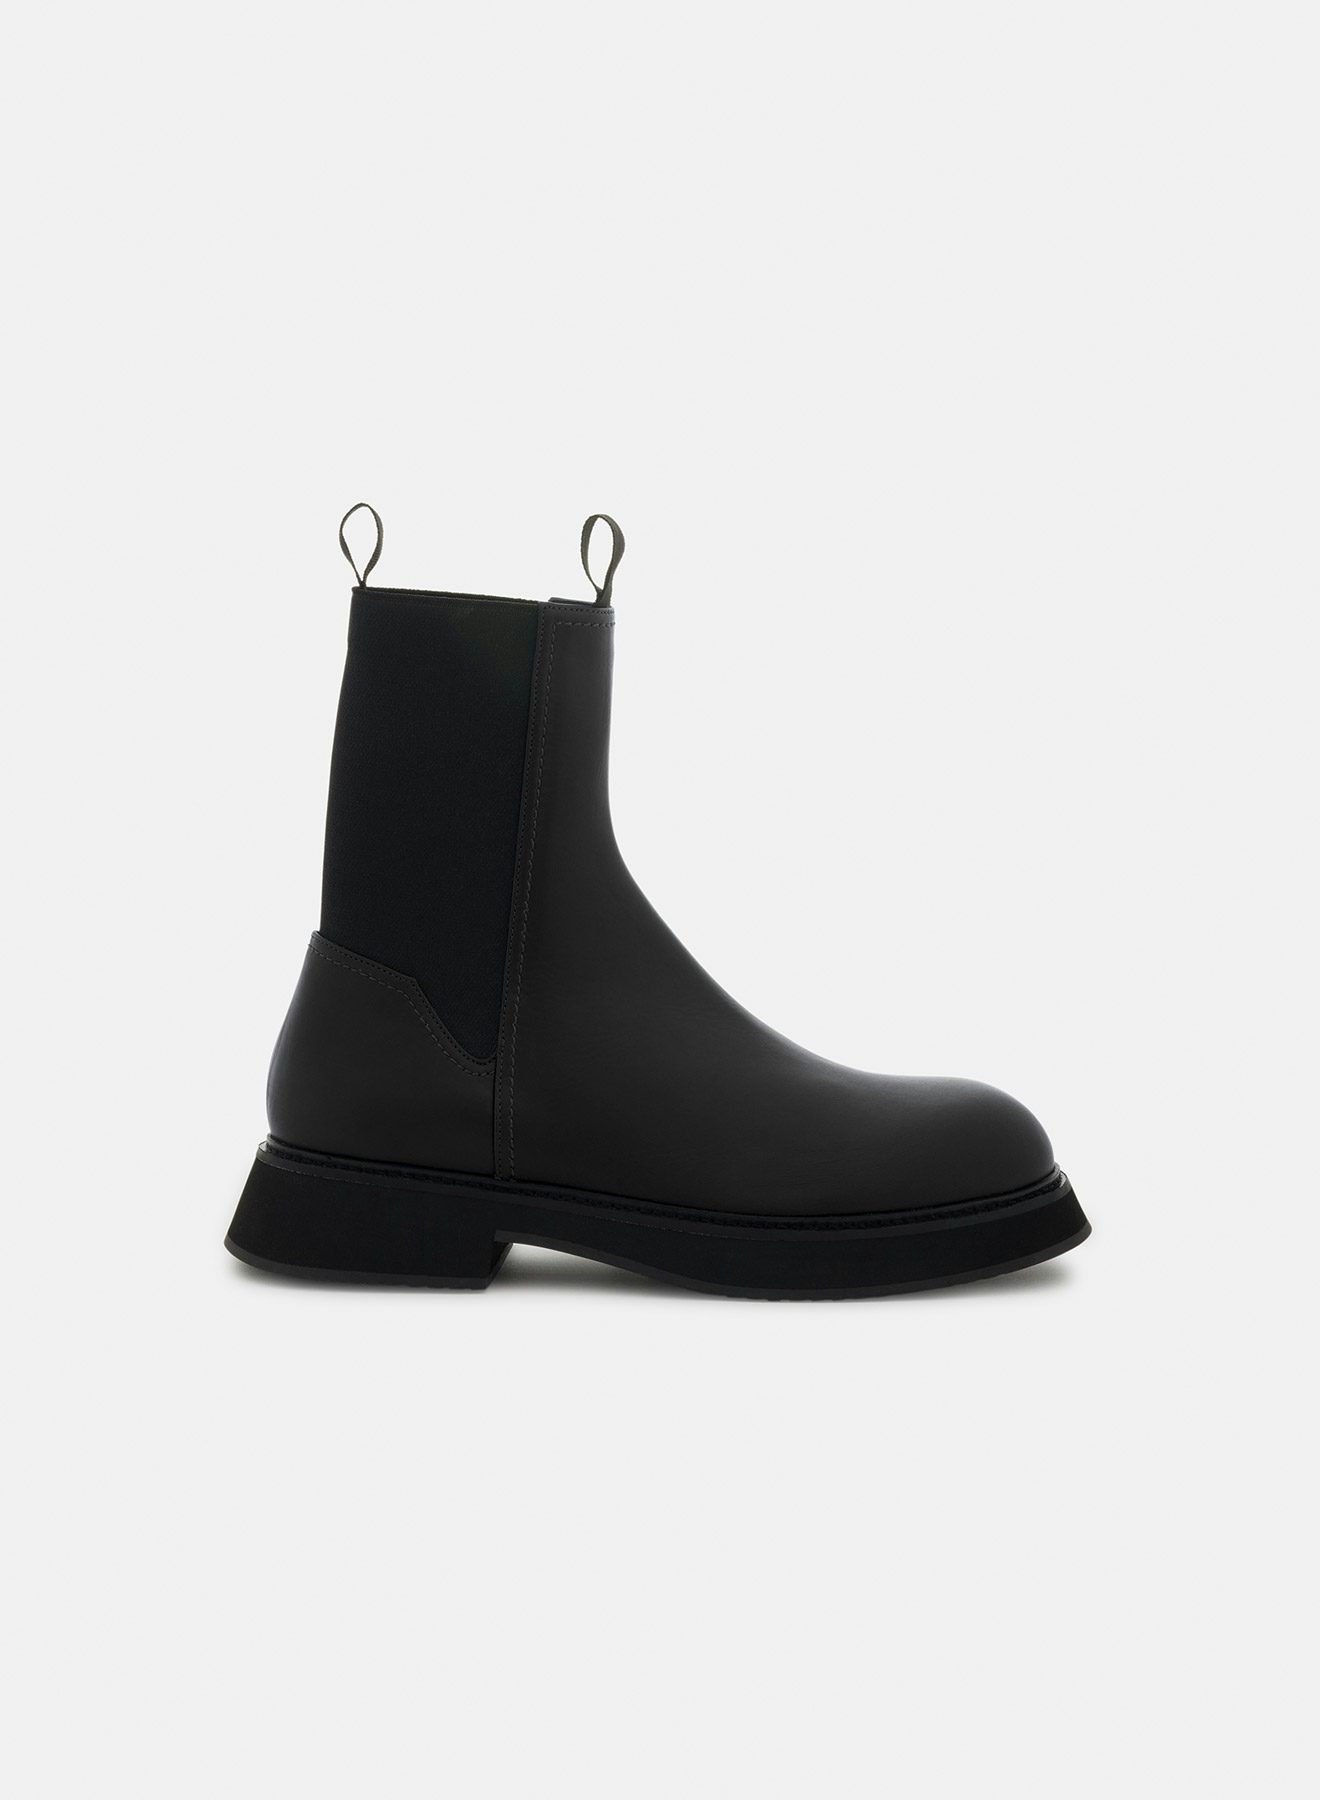 Calf leather boots black - Nina Ricci